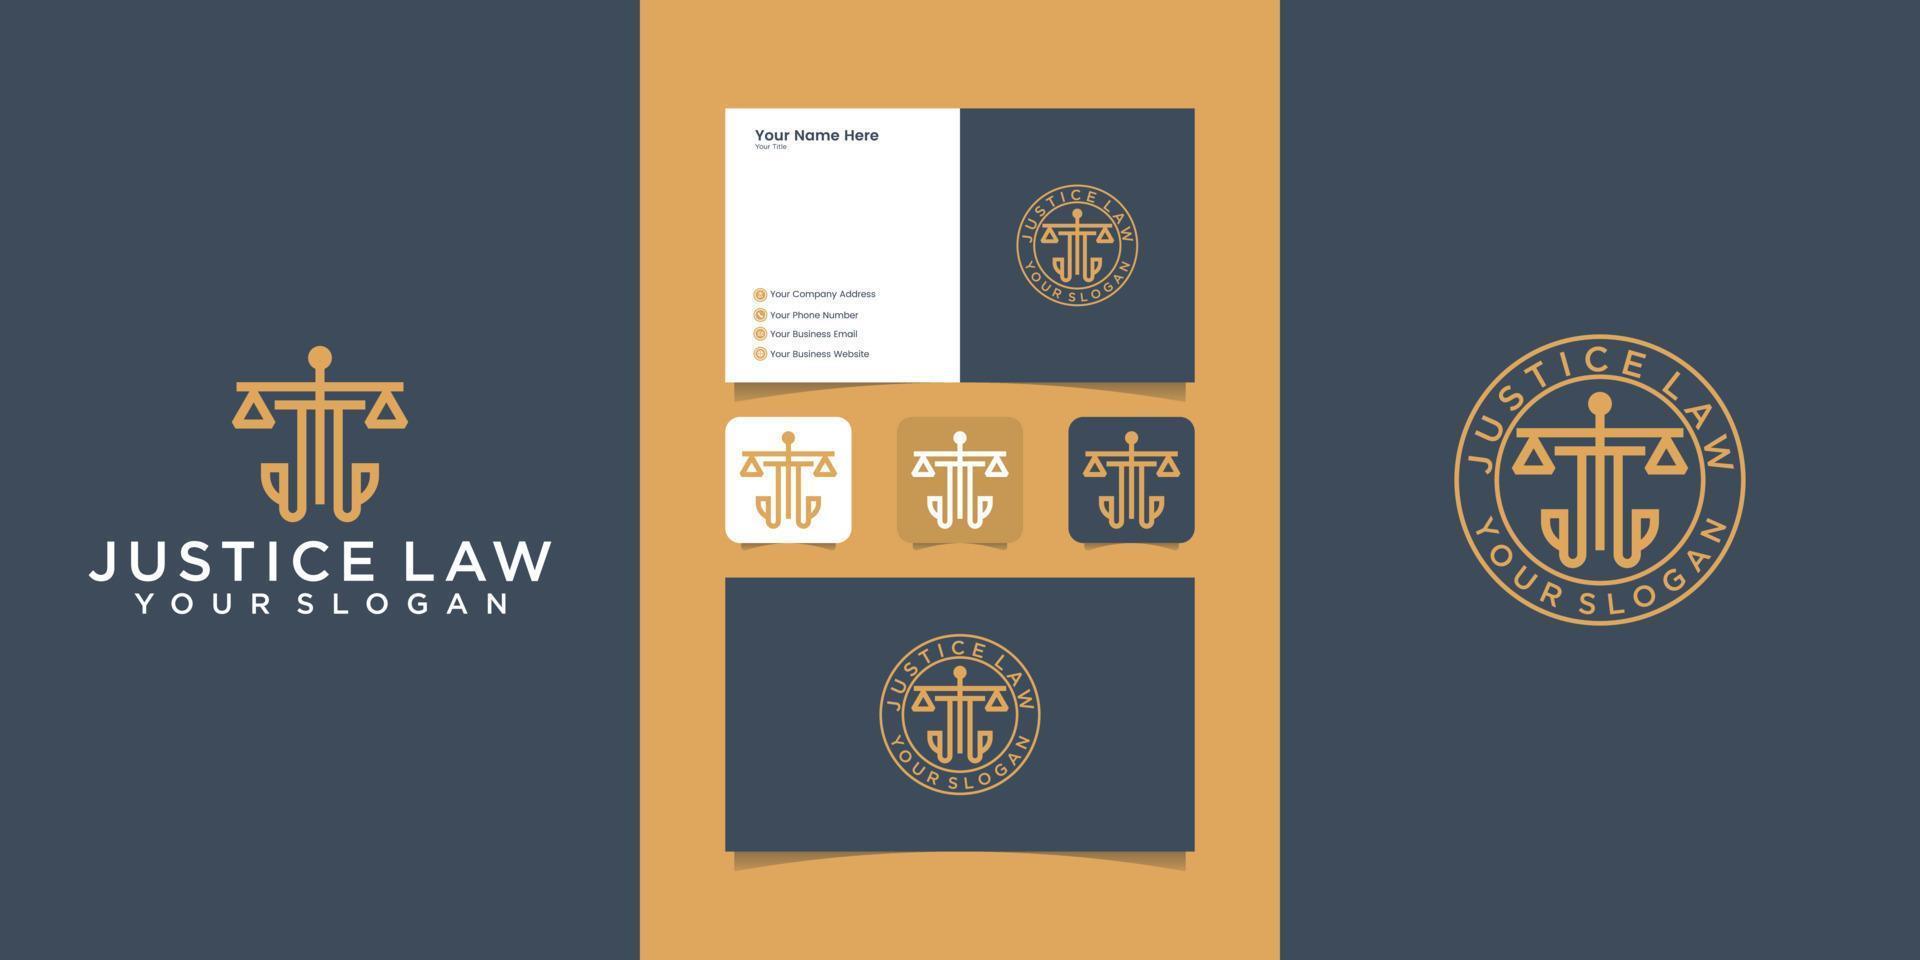 modèle de logo de cabinet d'avocats et carte de visite vecteur